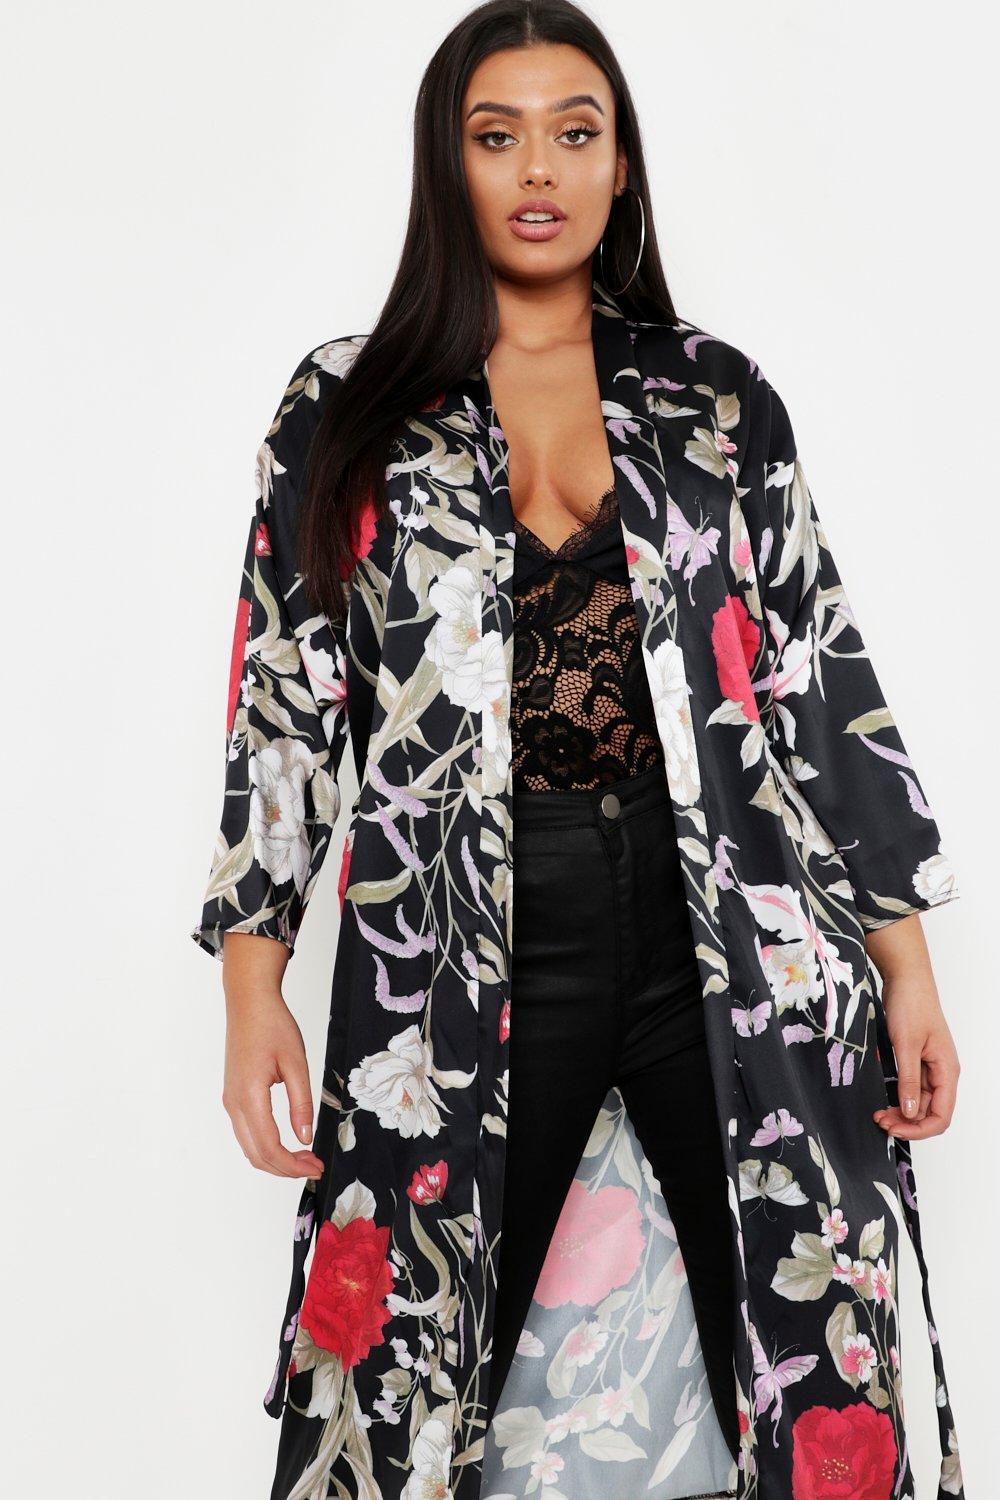 Boohoo Womens Plus Size Floral Kimono | eBay